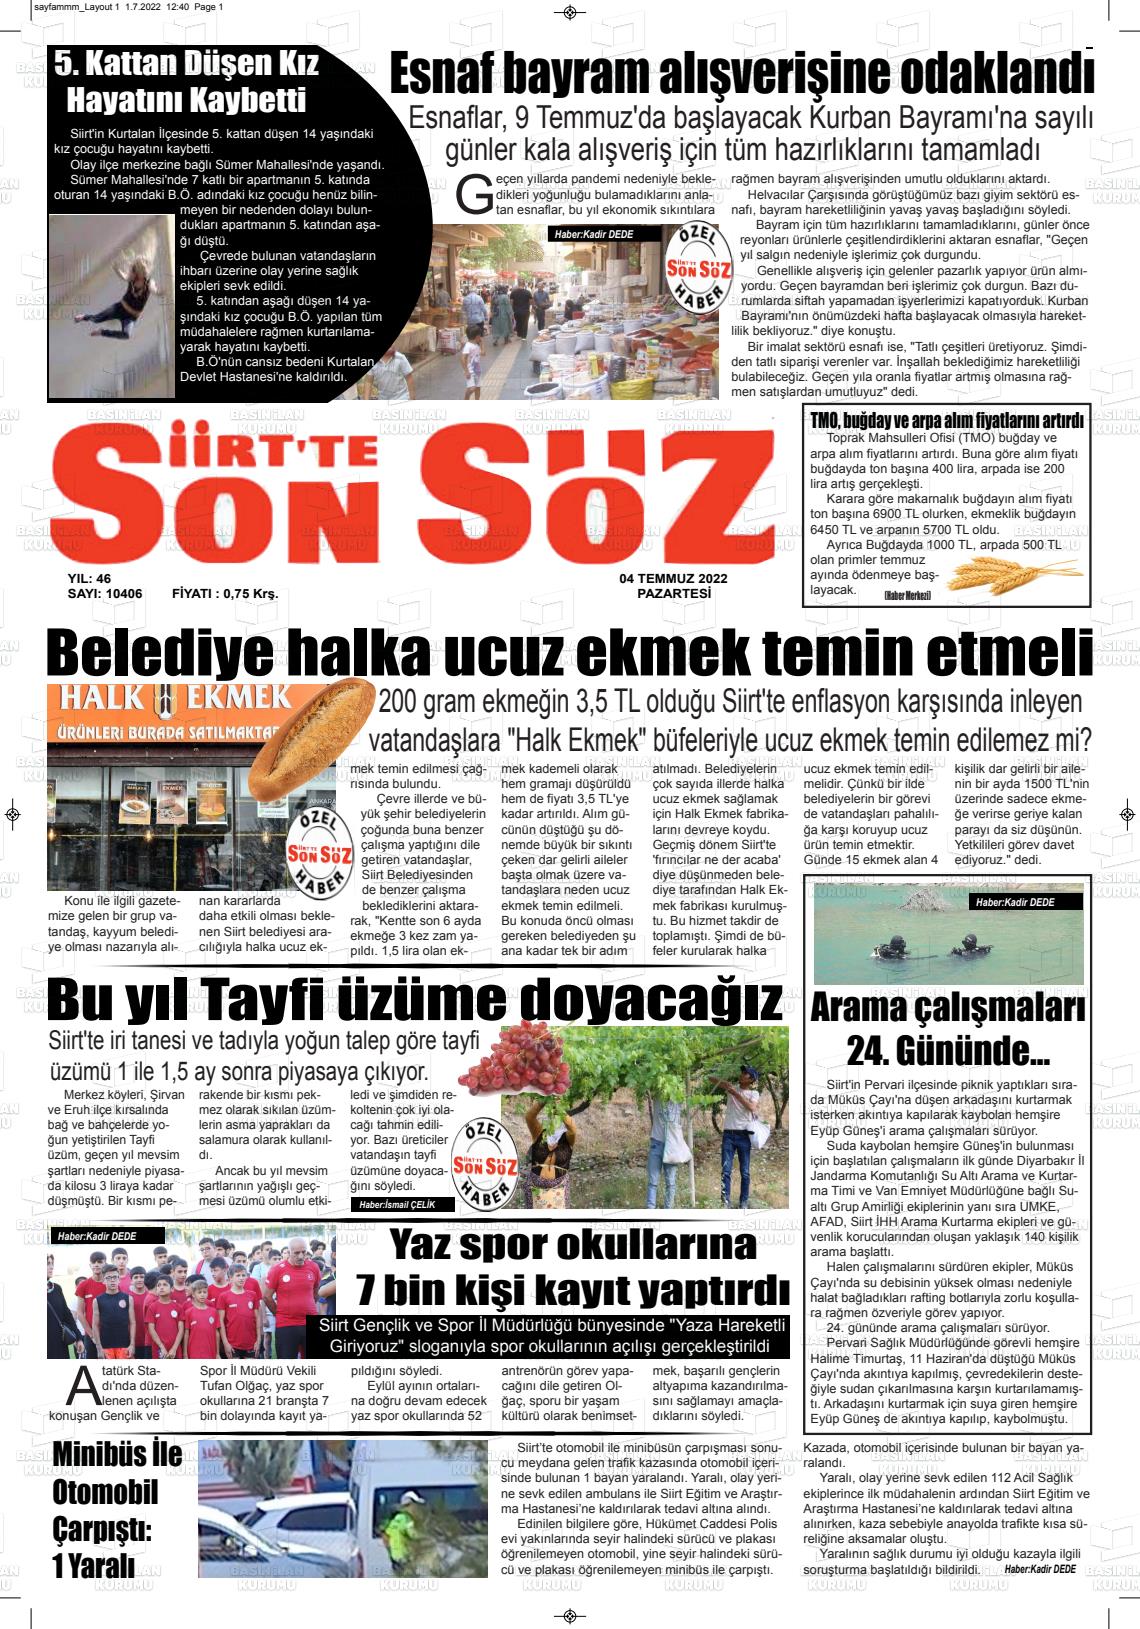 04 Temmuz 2022 Siirt'te Sonsöz Gazete Manşeti